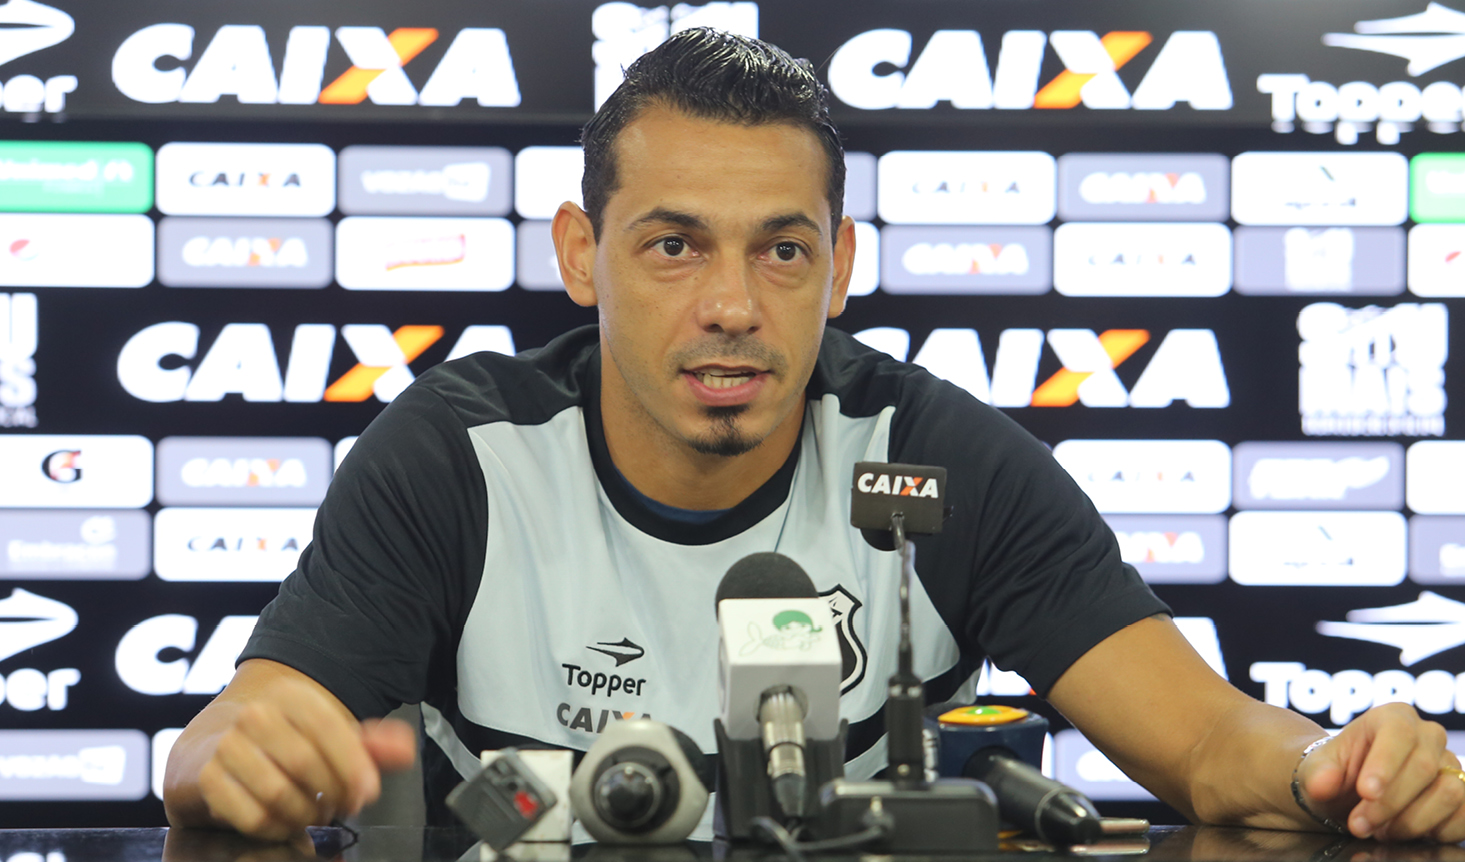 Roberto: “Independente de quem faça os gols, o importante é sair com a vitória”